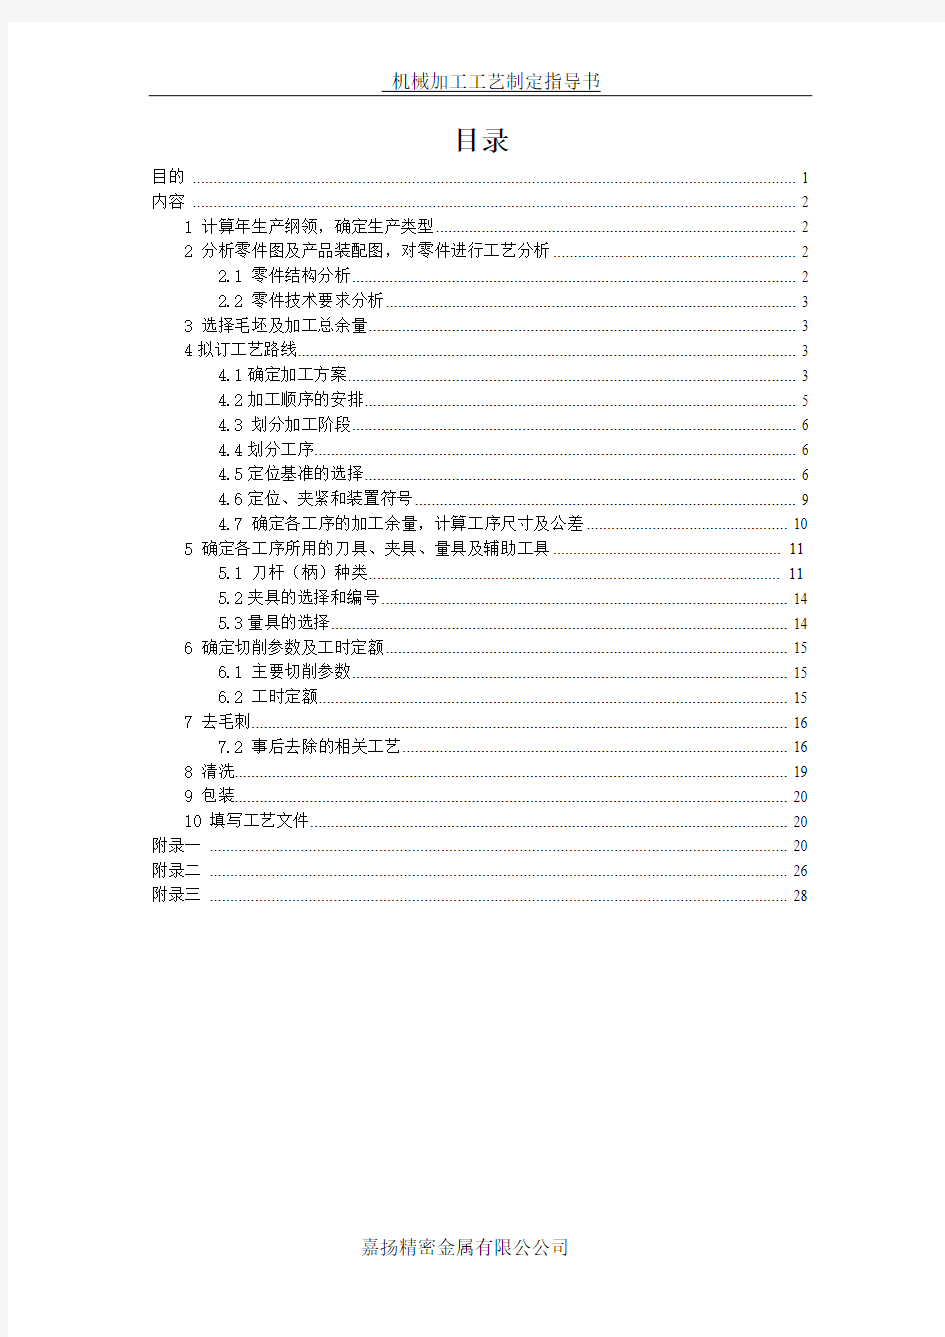 加工工艺制定作业指导书--2015.1.5